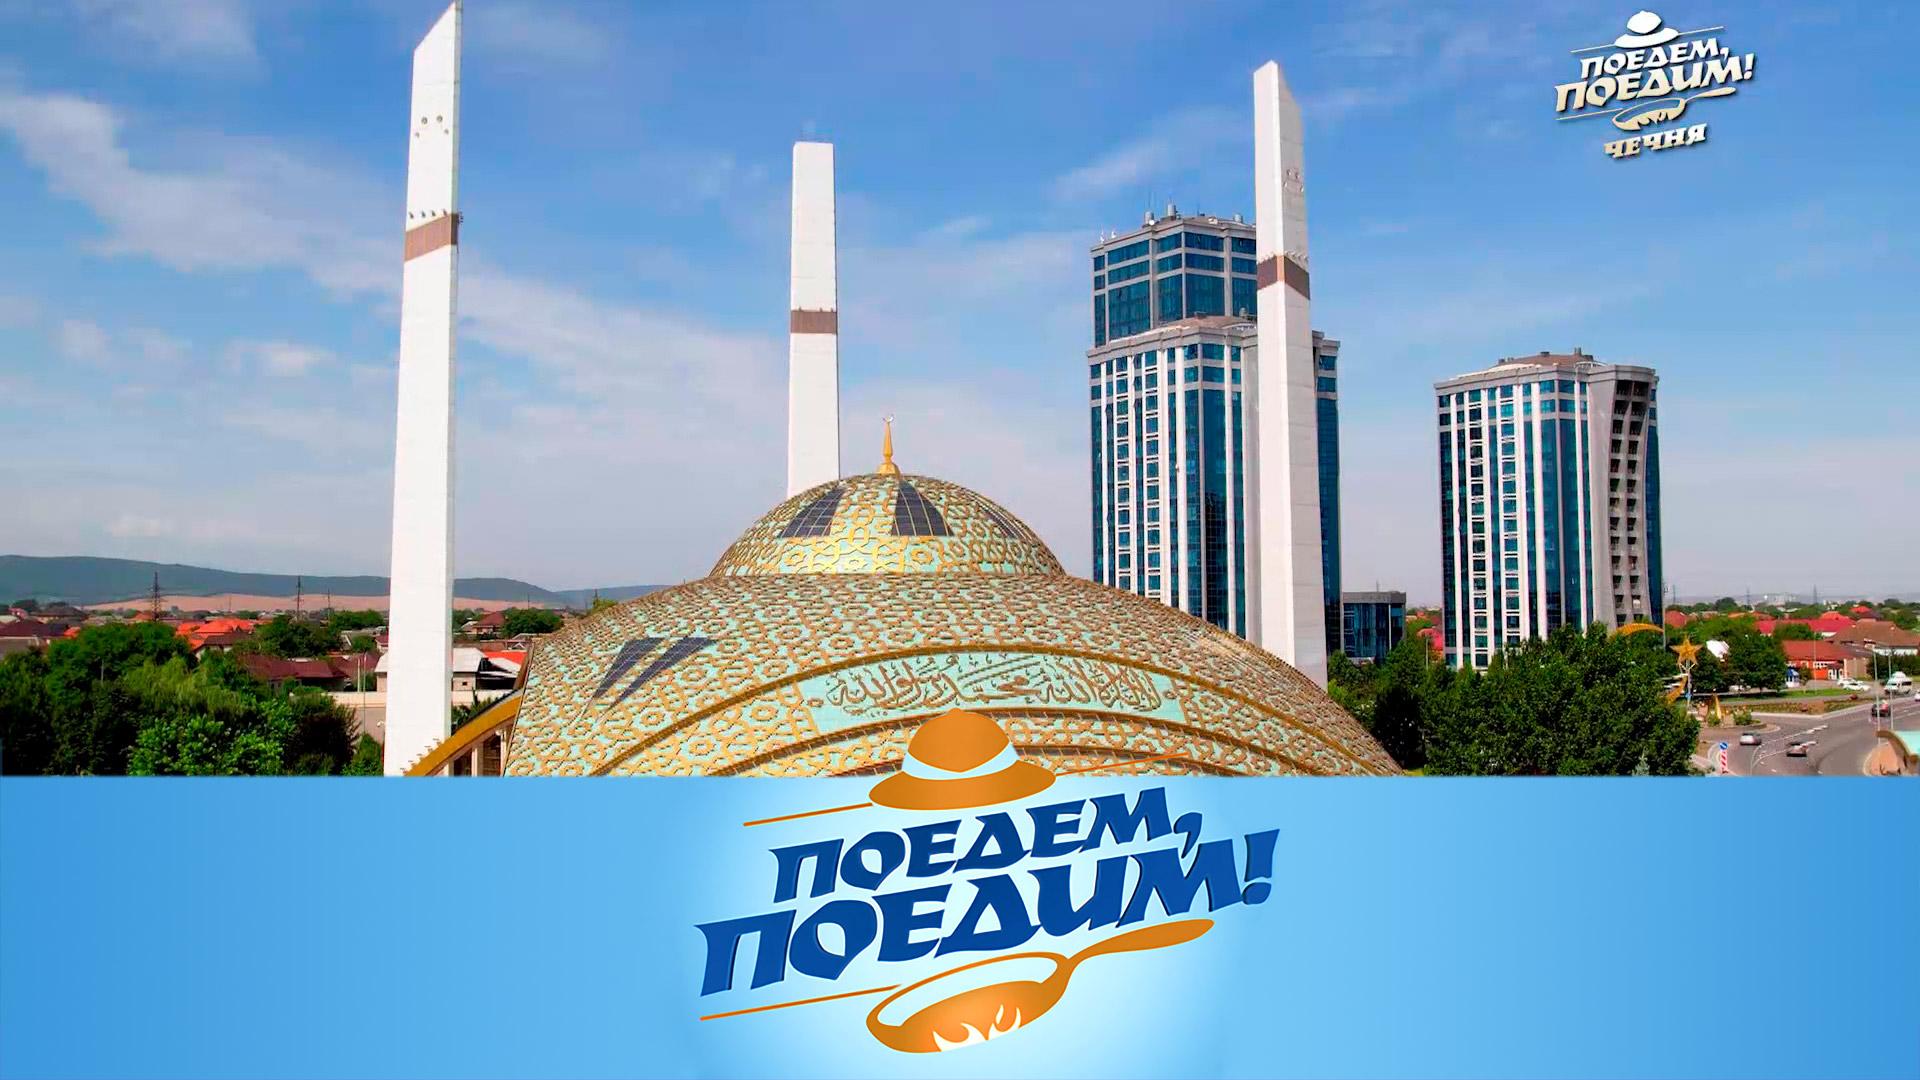 Чечня: Сердце матери, Кезеной-Ам и Хой, 5 видов хинкала и самая вкусная улица | Поедем, поедим!